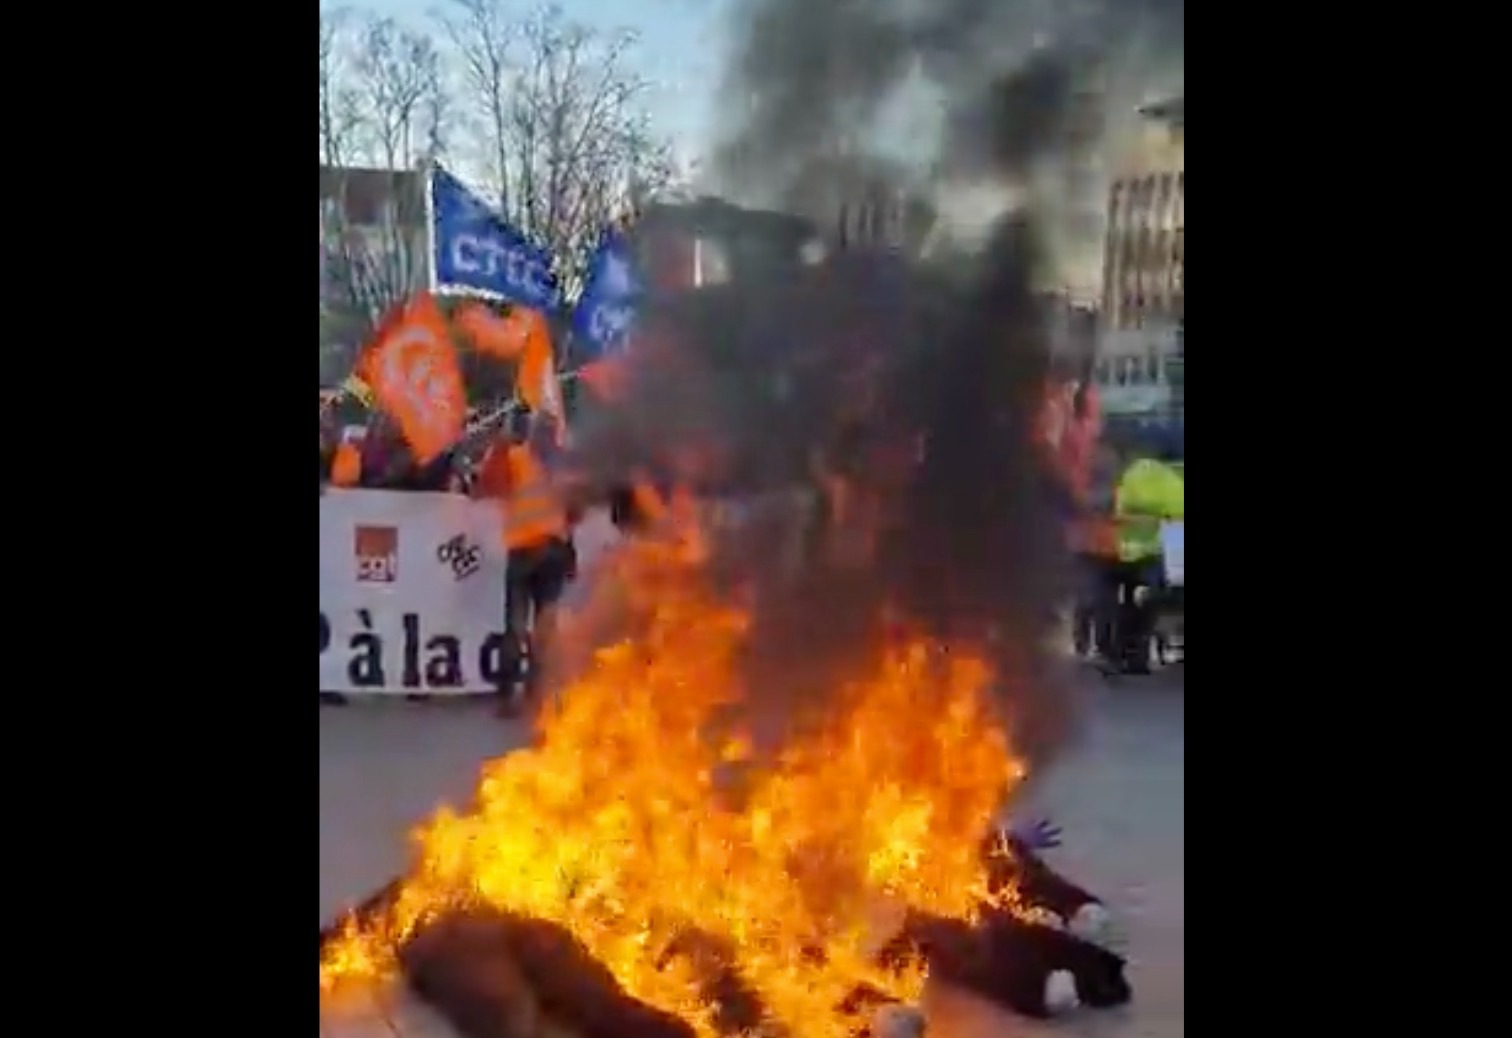 Berger condamne les mannequins Macron-Borne brûlés à Dijon, pas les interpellations de manifestants